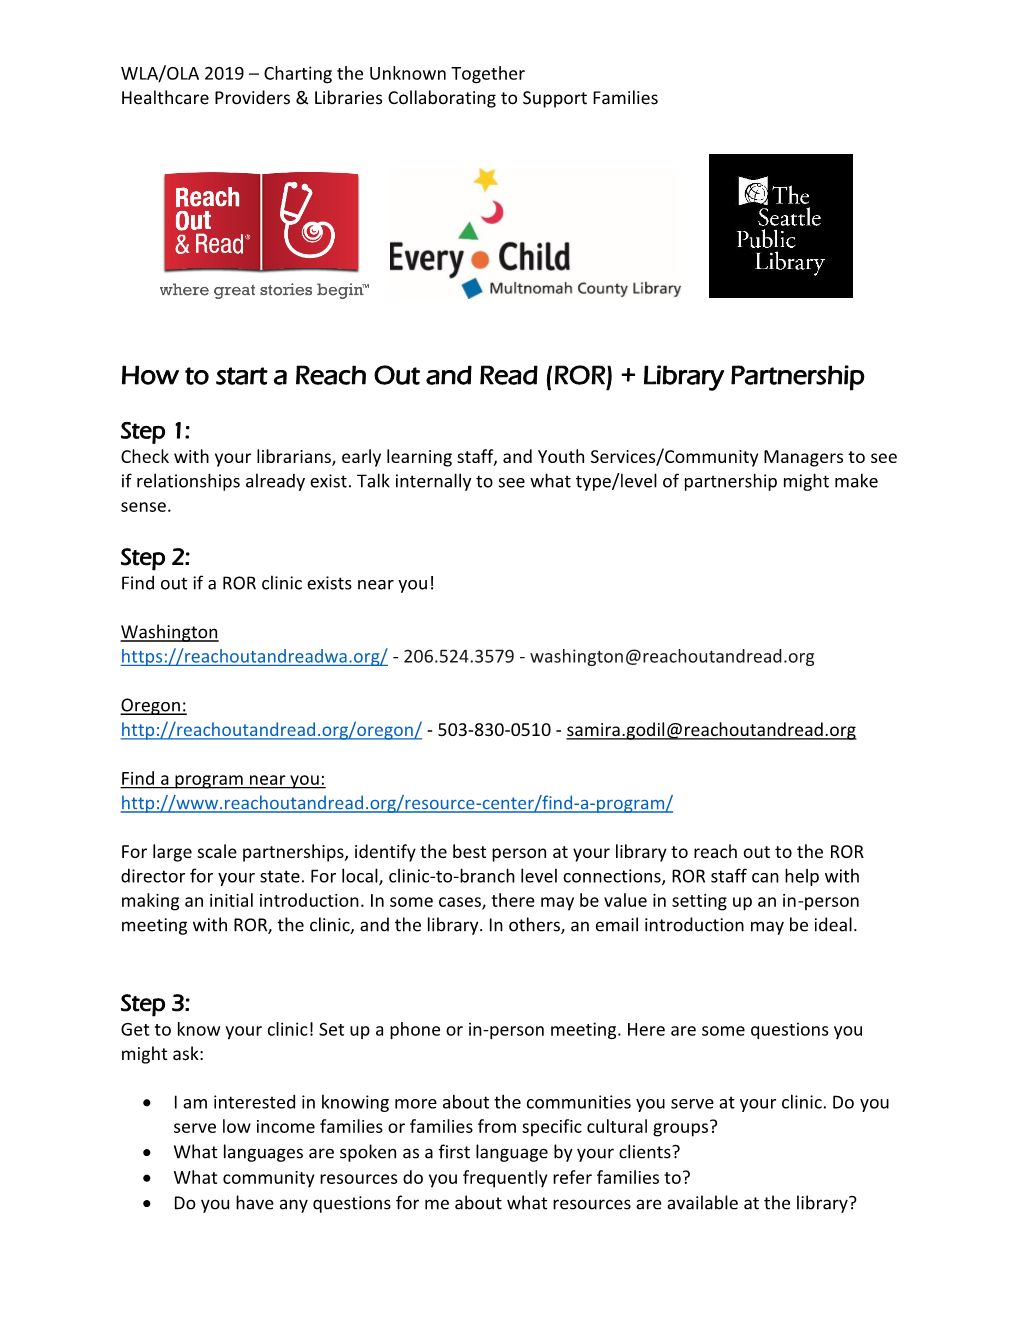 ROR) + Library Partnership